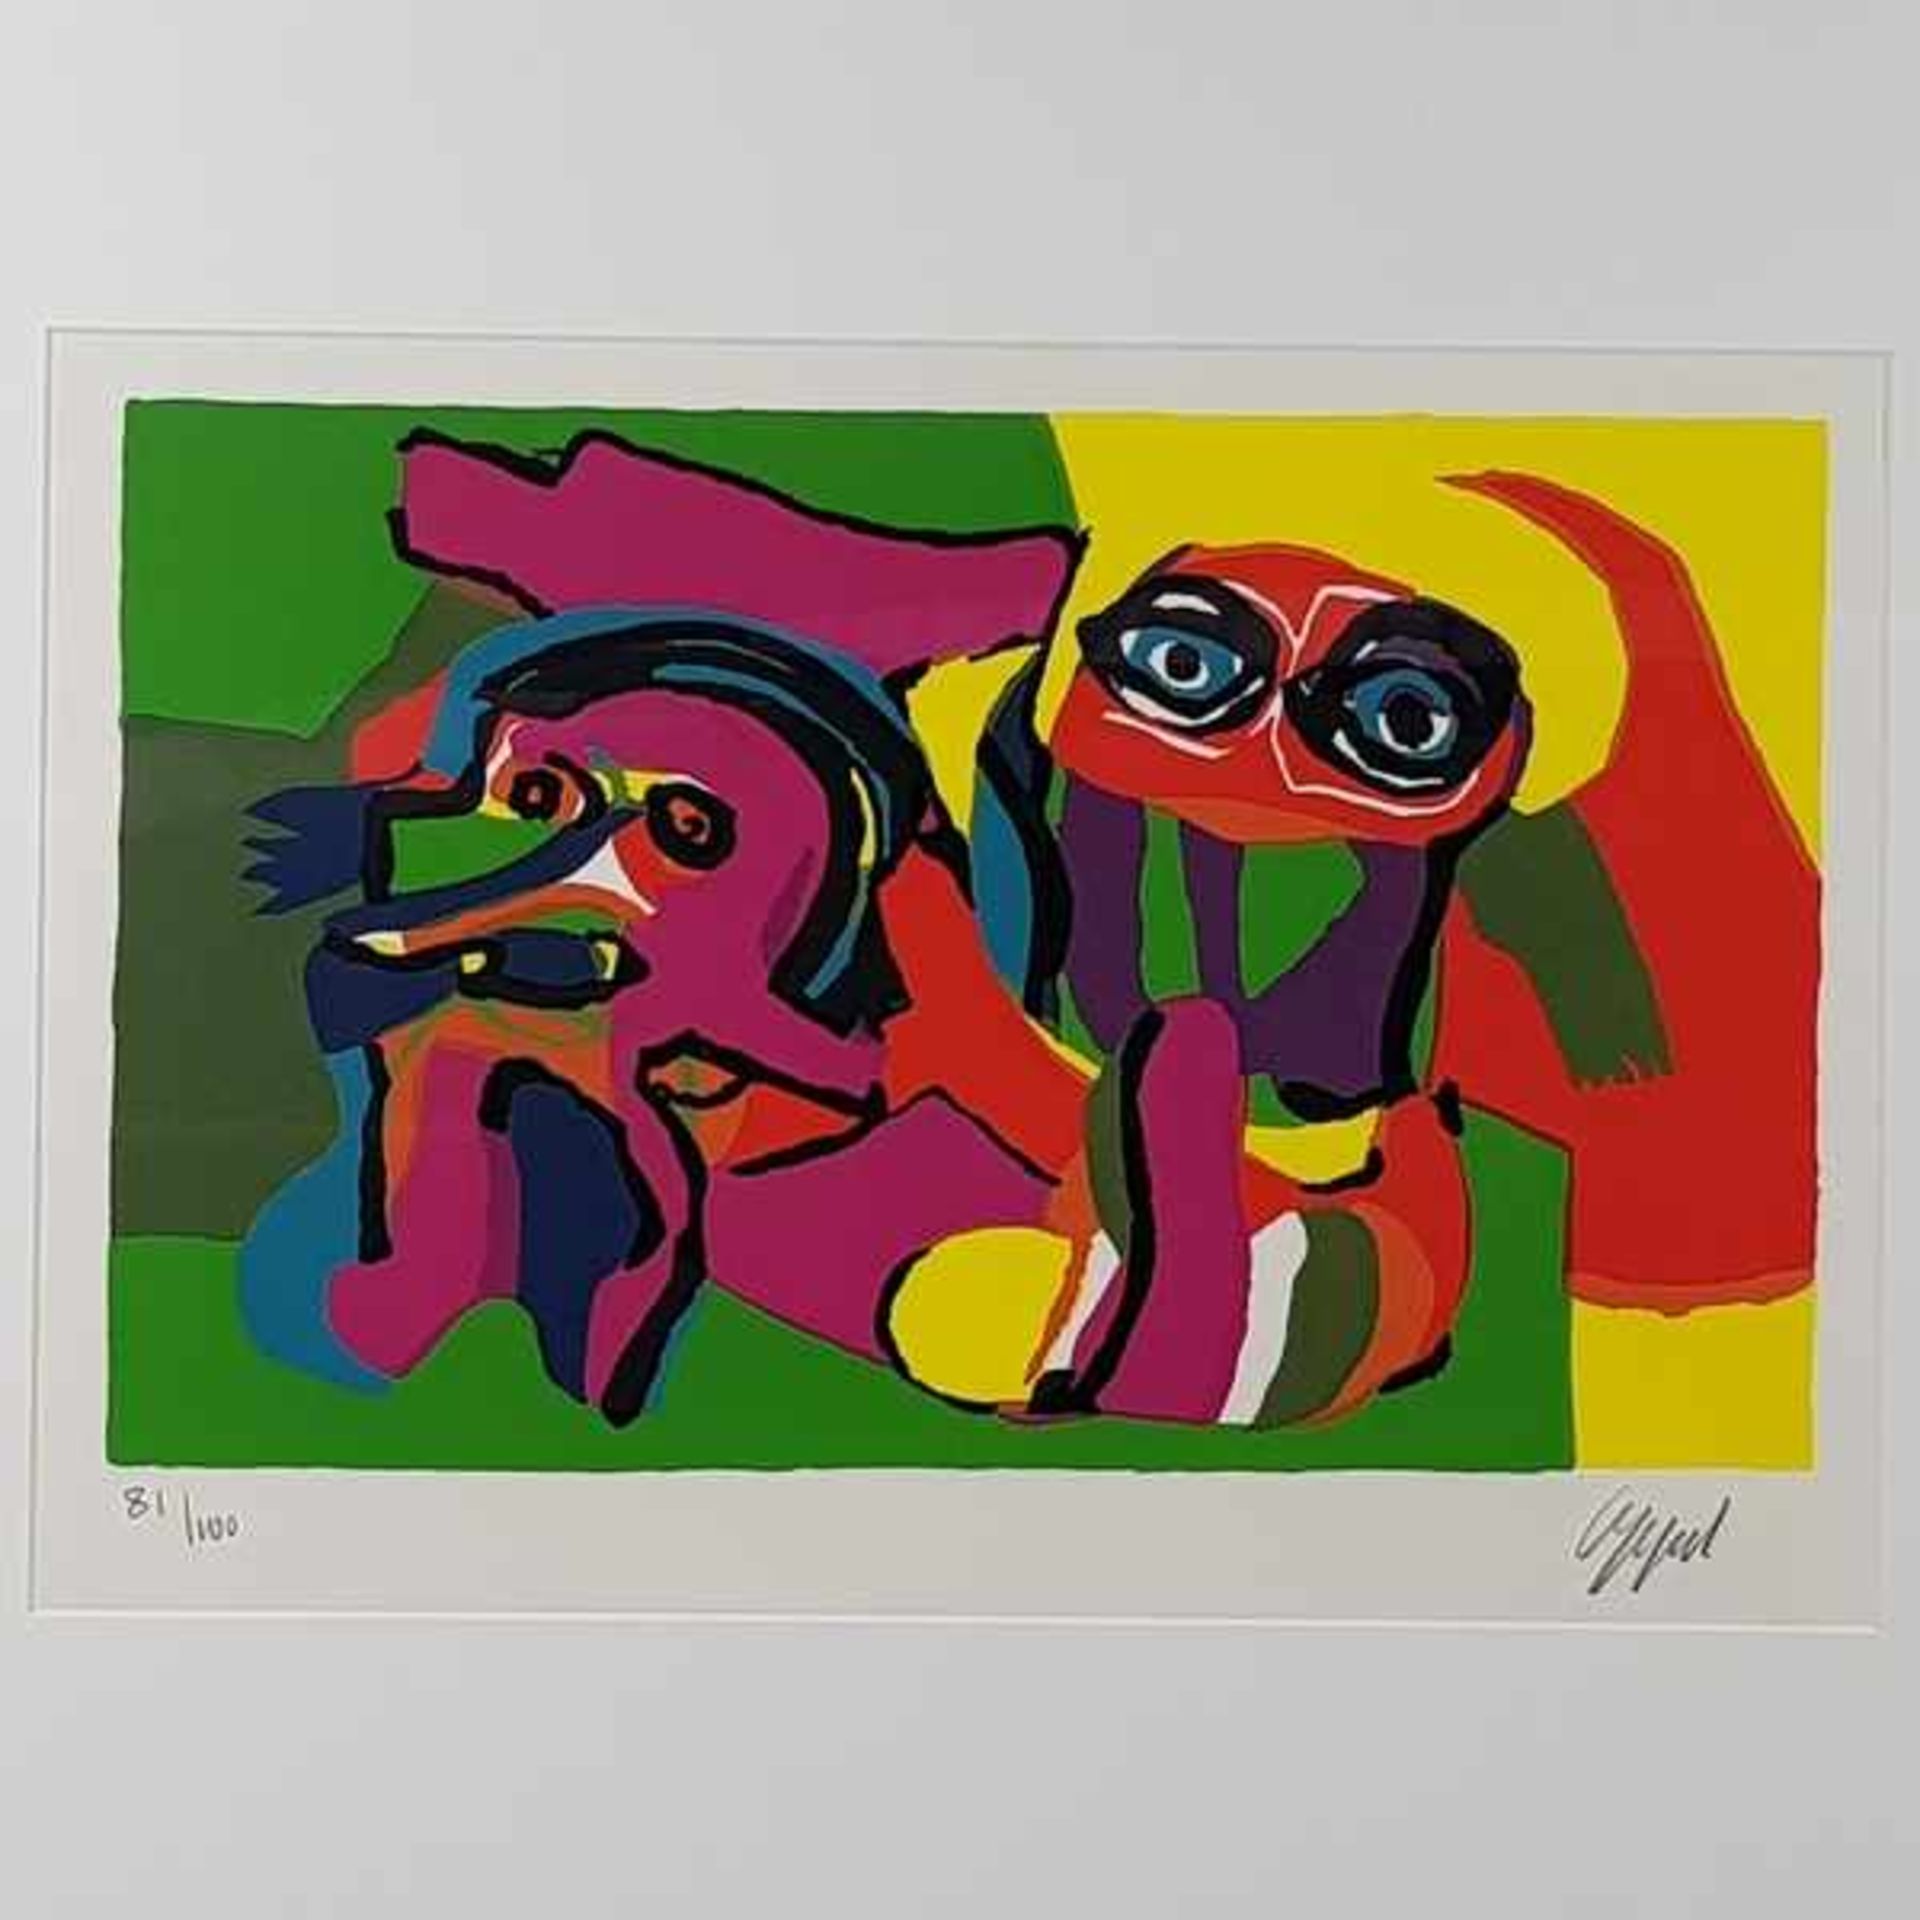 (Kunst) Zeefdruk, Karel Appel, twee figuren, ca. 1975Zeefdruk, Karel Appel, twee figuren ca. 1975, - Bild 2 aus 6